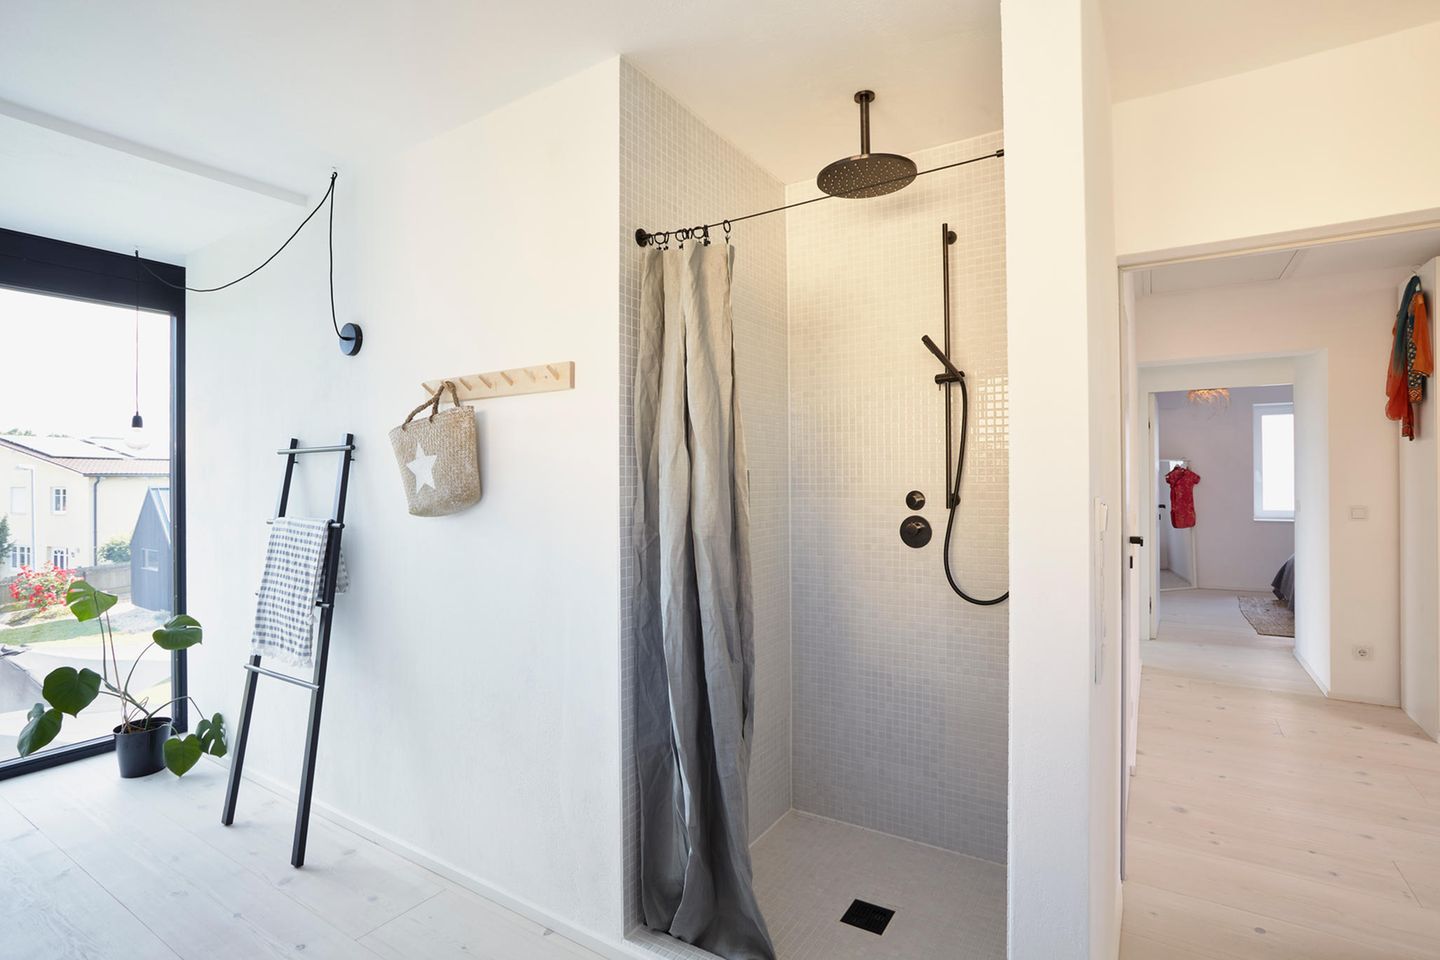 Badezimmer in Grau und Weiß mit schwarzer Regenwasserdusche in einer Nische